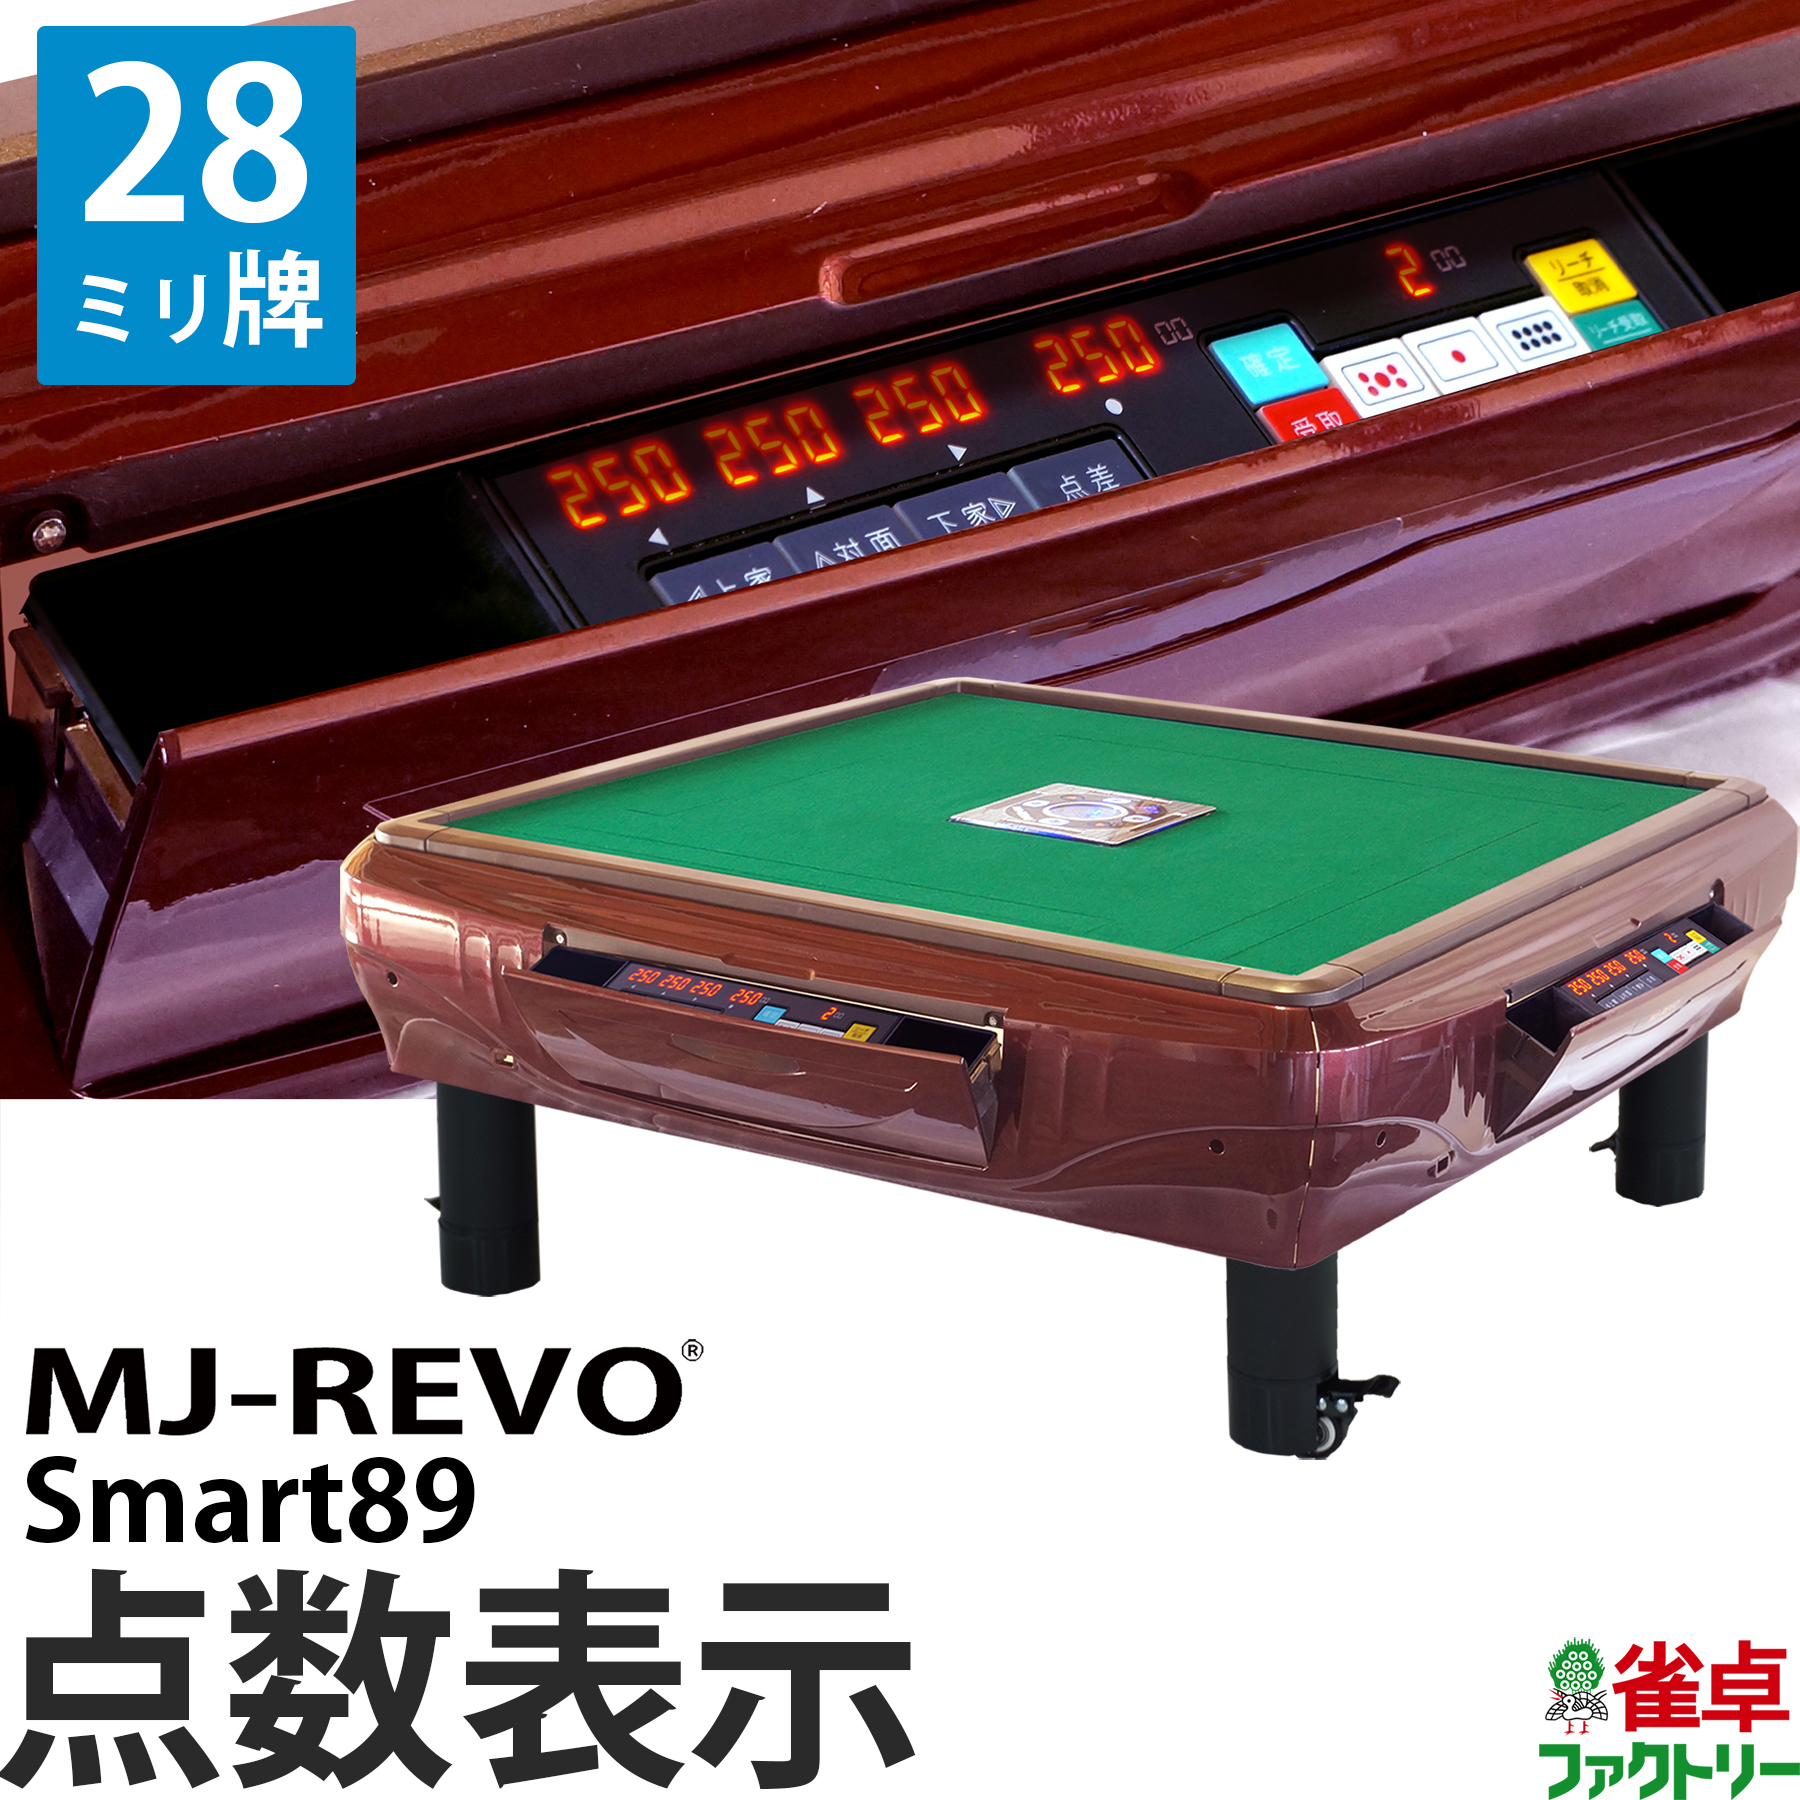 から厳選した 全自動麻雀卓 点数表示 MJ-REVO Smart89 座卓 28ミリ